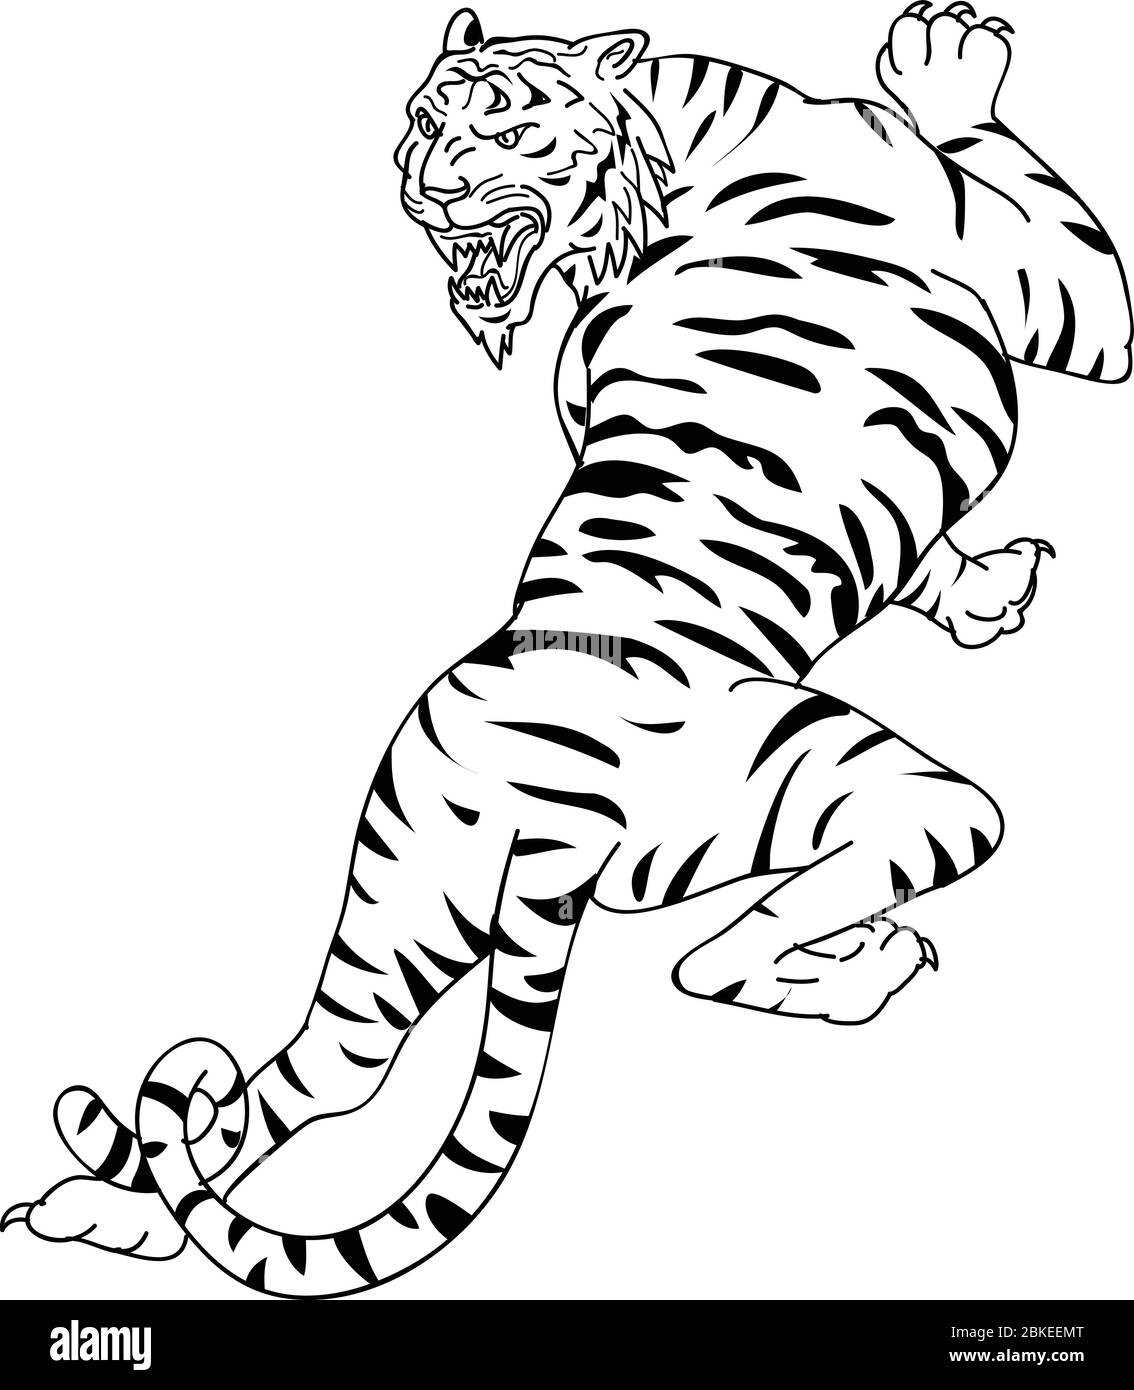 Disegno di disegno di uno stile di disegno di una tigre del Bengala che sale, stalking e guardando giù su sfondo bianco isolato fatto in bianco e nero. Illustrazione Vettoriale